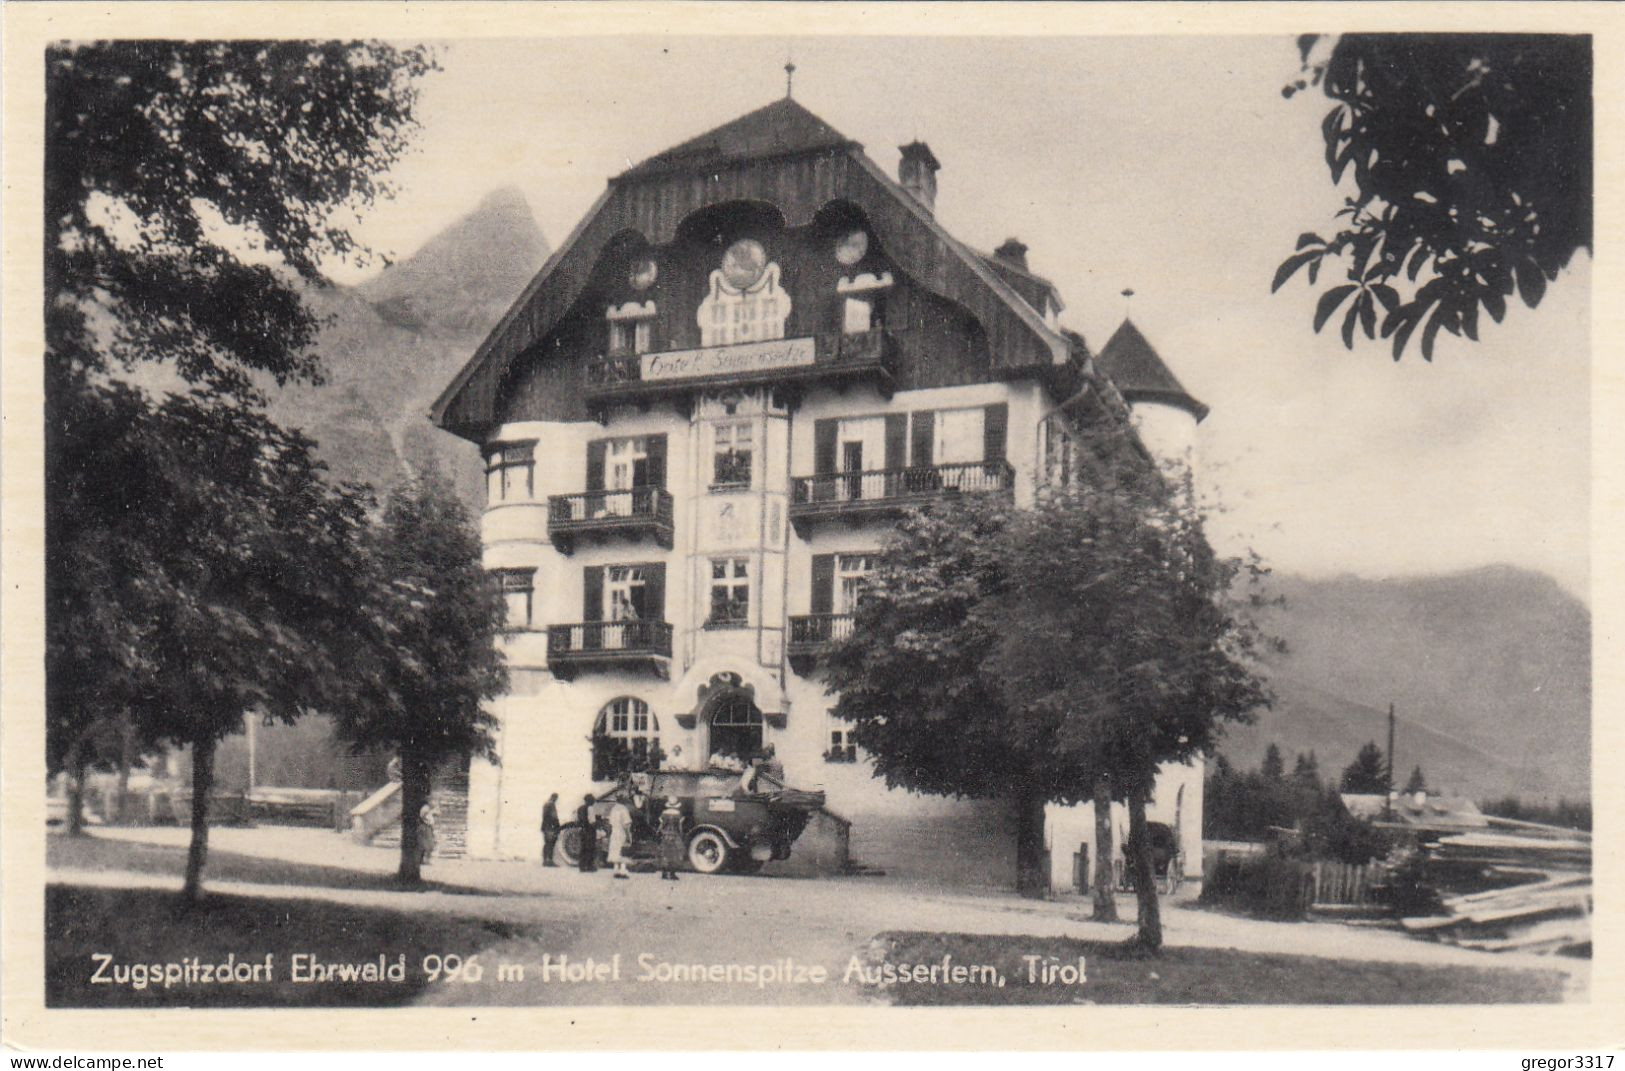 D8301) EHRWALD - Zugspitzdorf Ehrwald 996m - Hotel SONNENSPITZE Mit Sehr Altem AUTO - Tirol  Ausserfern - Ehrwald